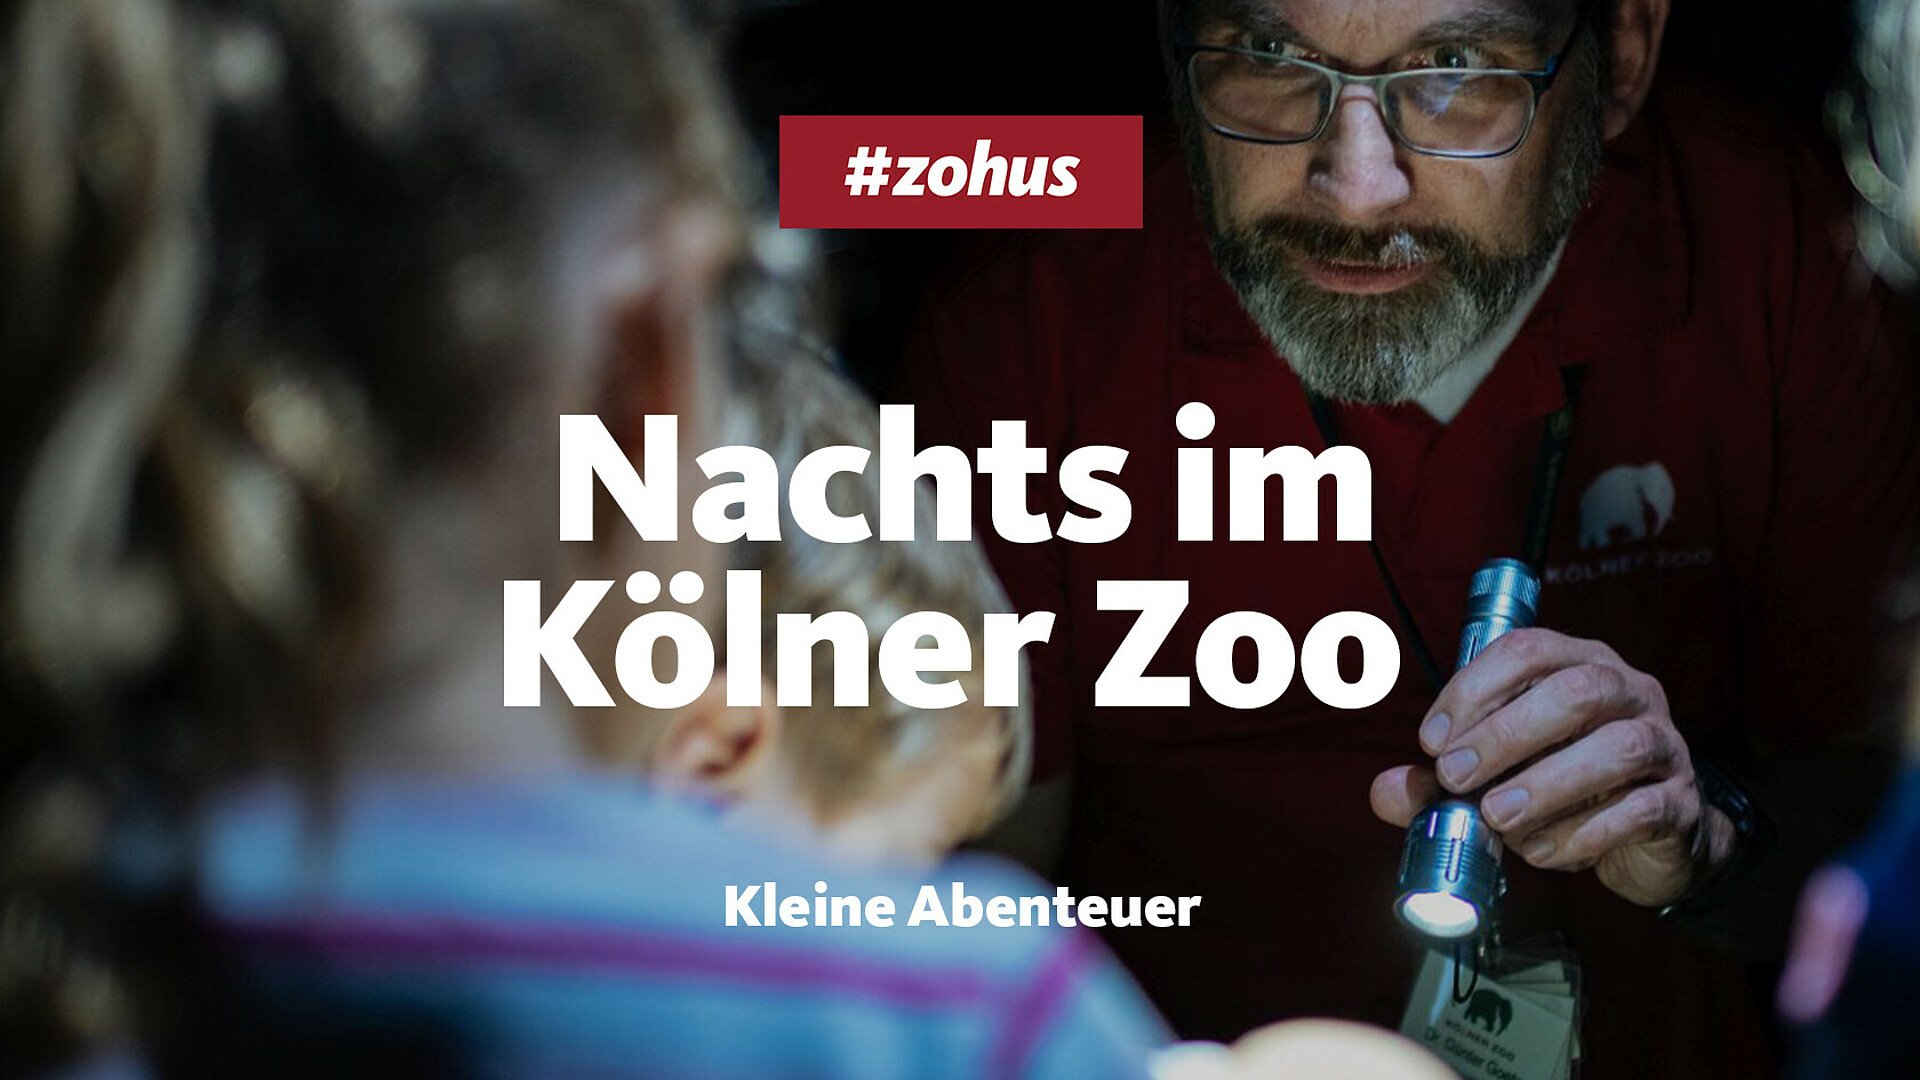 Taschenlampenführung im Kölner Zoo